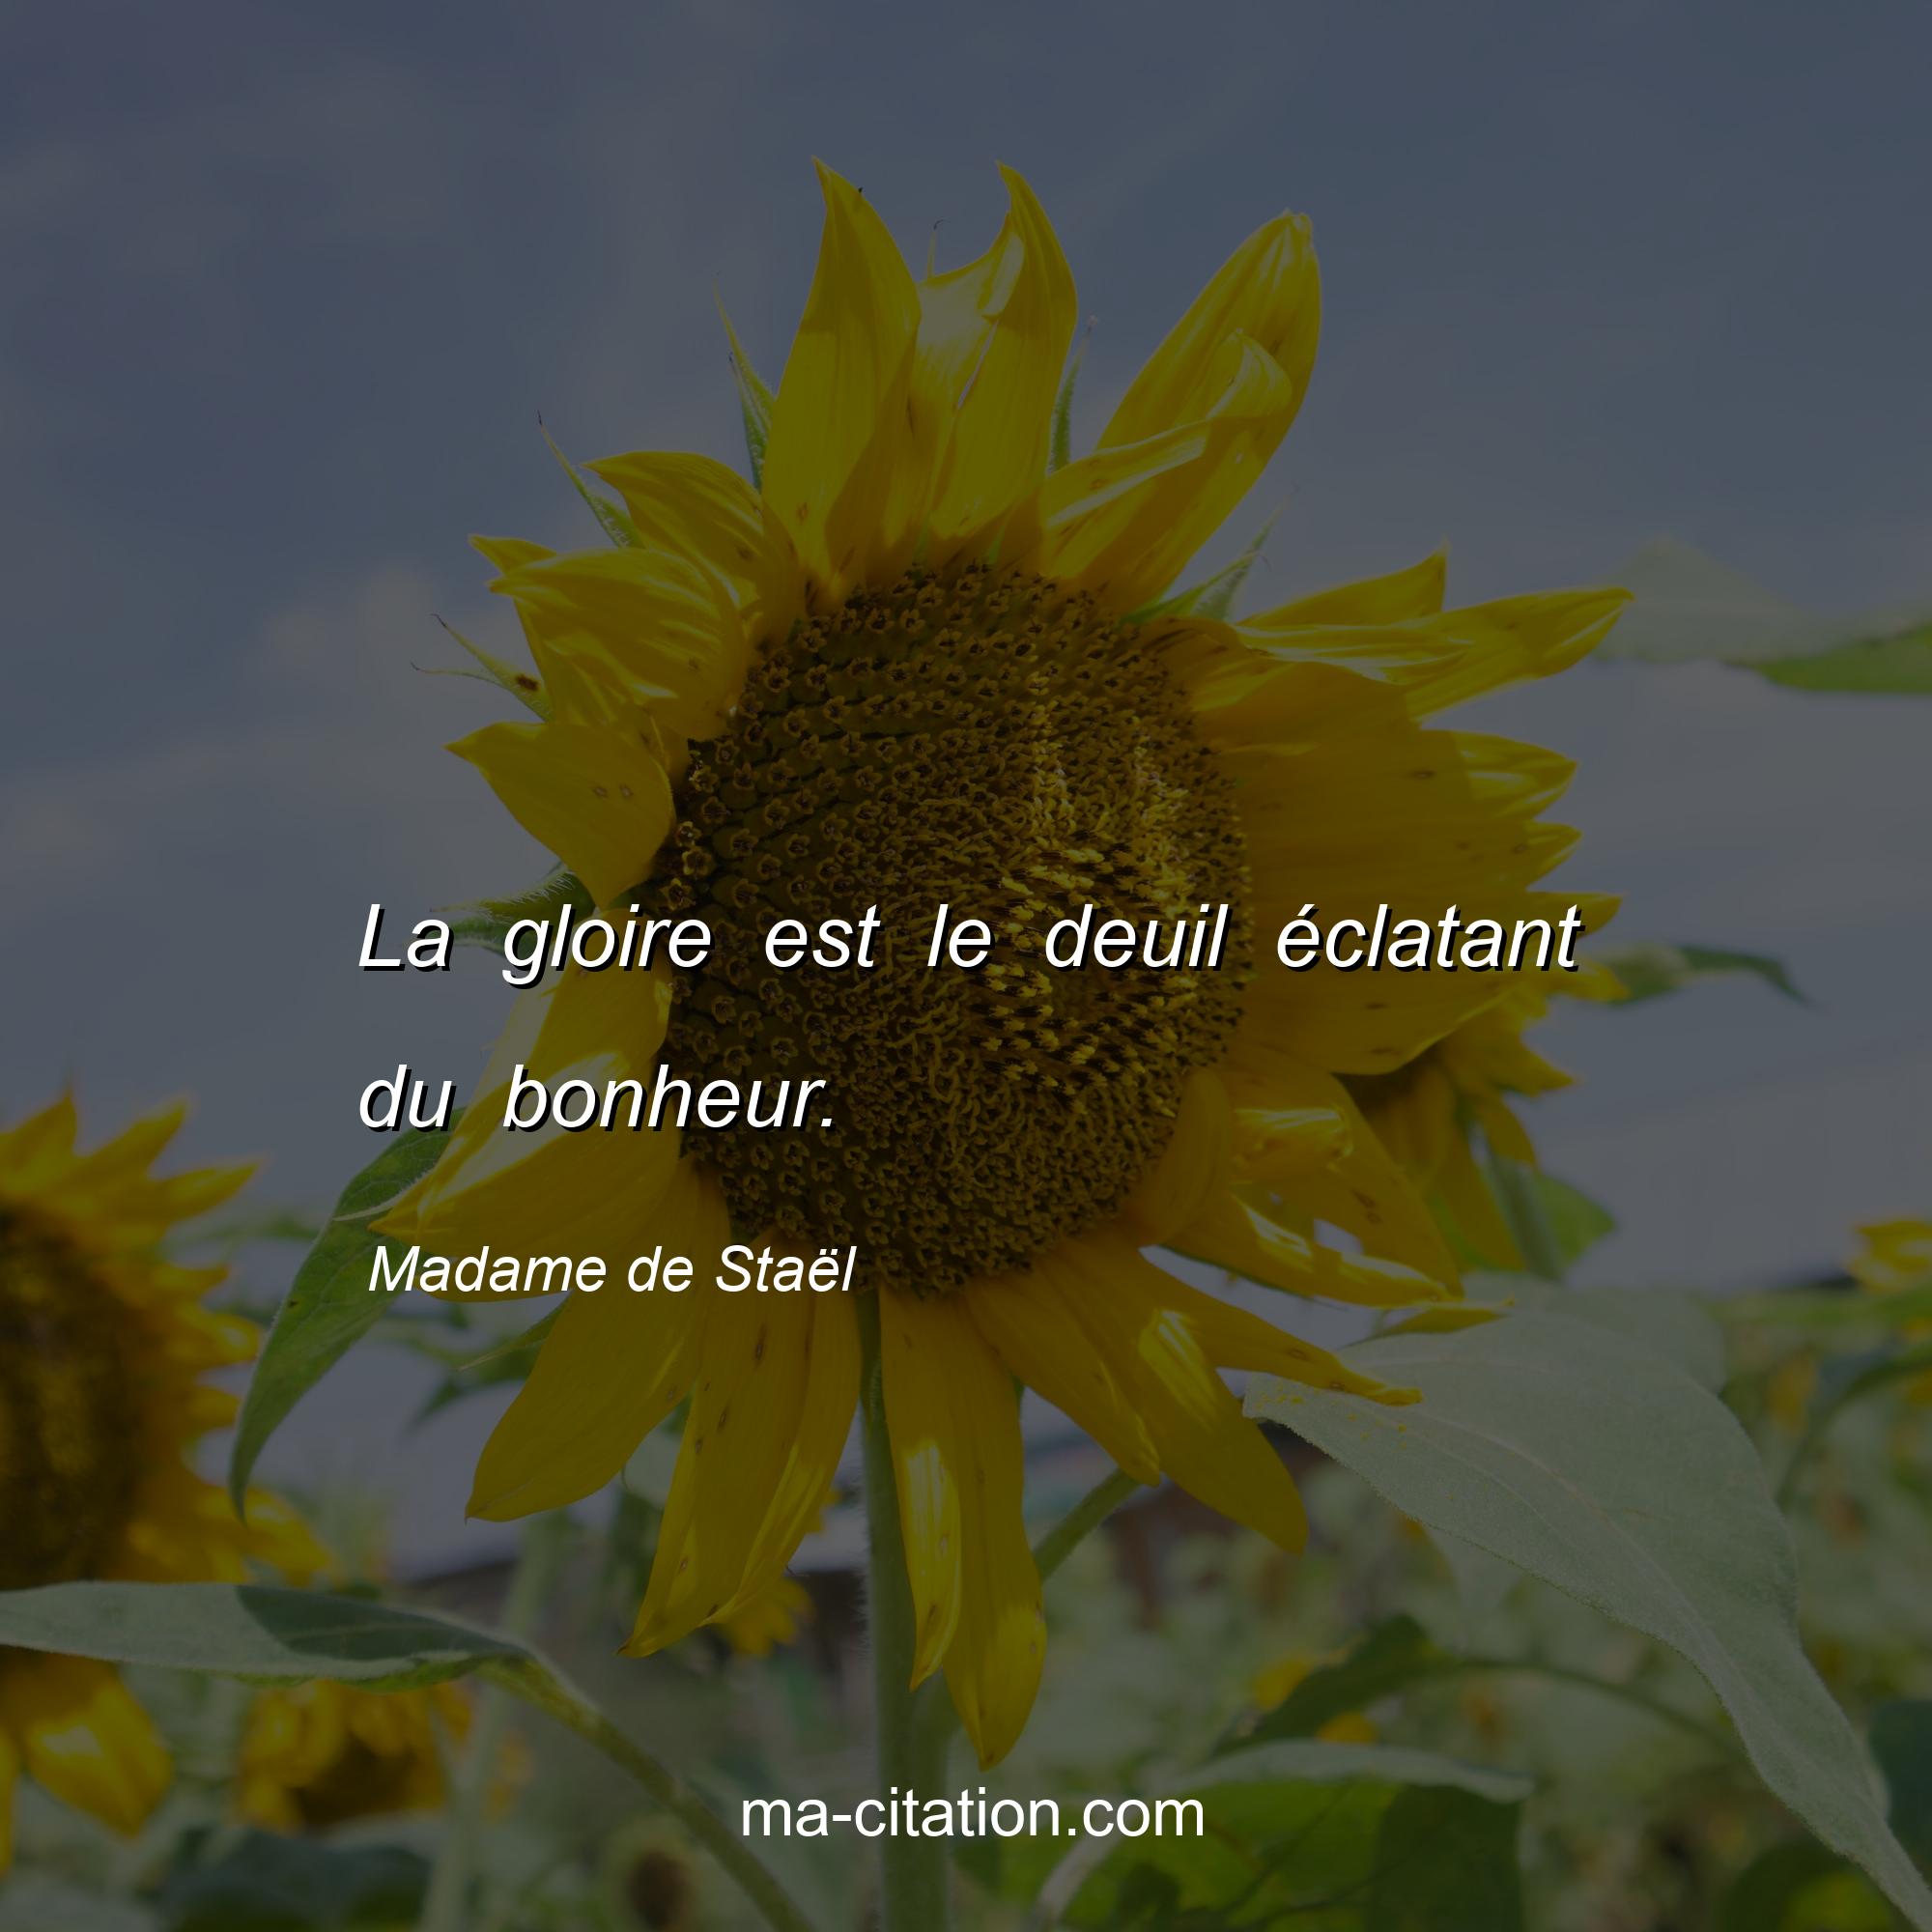 Madame de Staël : La gloire est le deuil éclatant du bonheur.